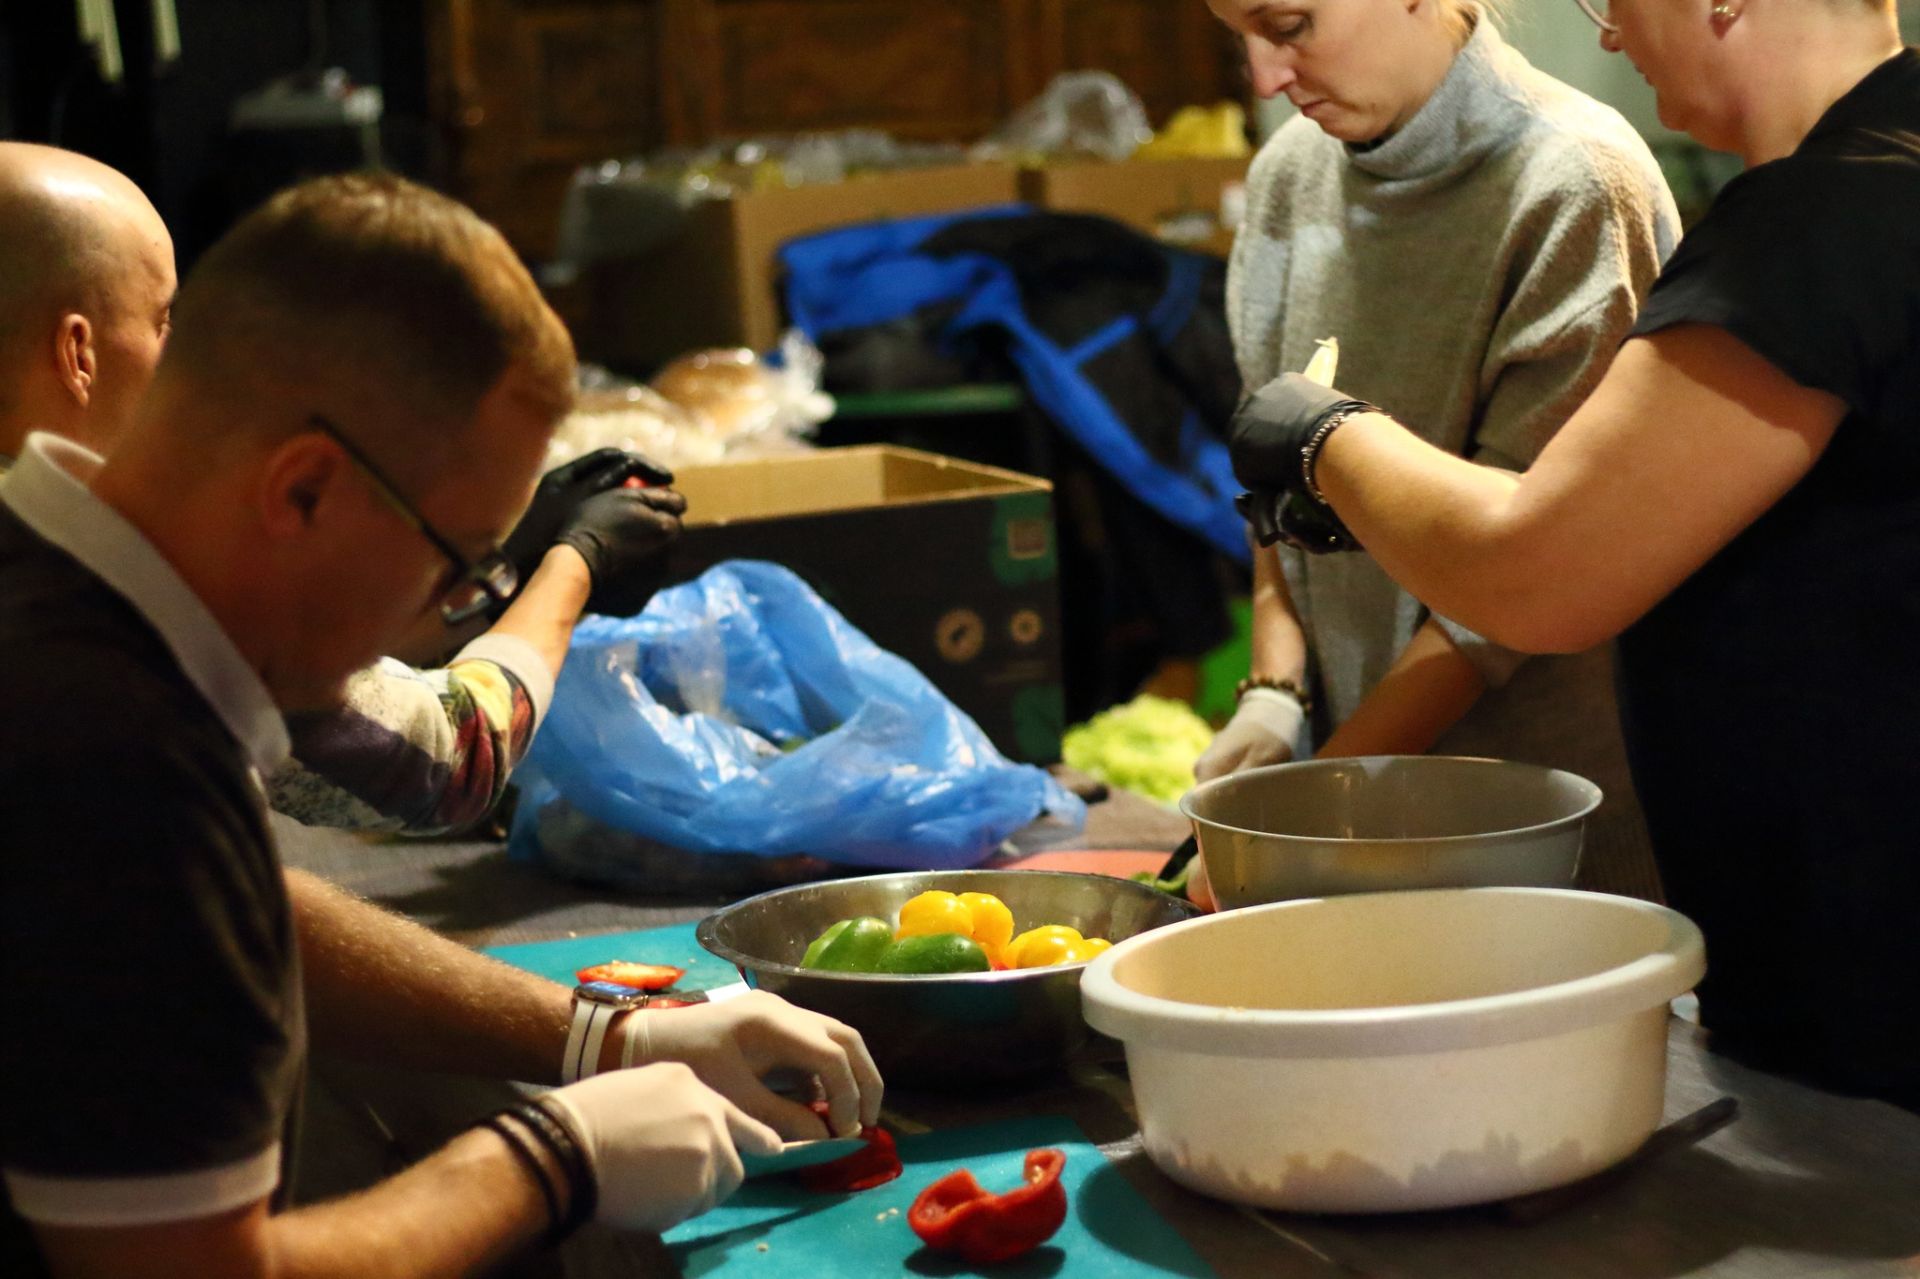 wolontariusze zupy w kato gotują posiłki